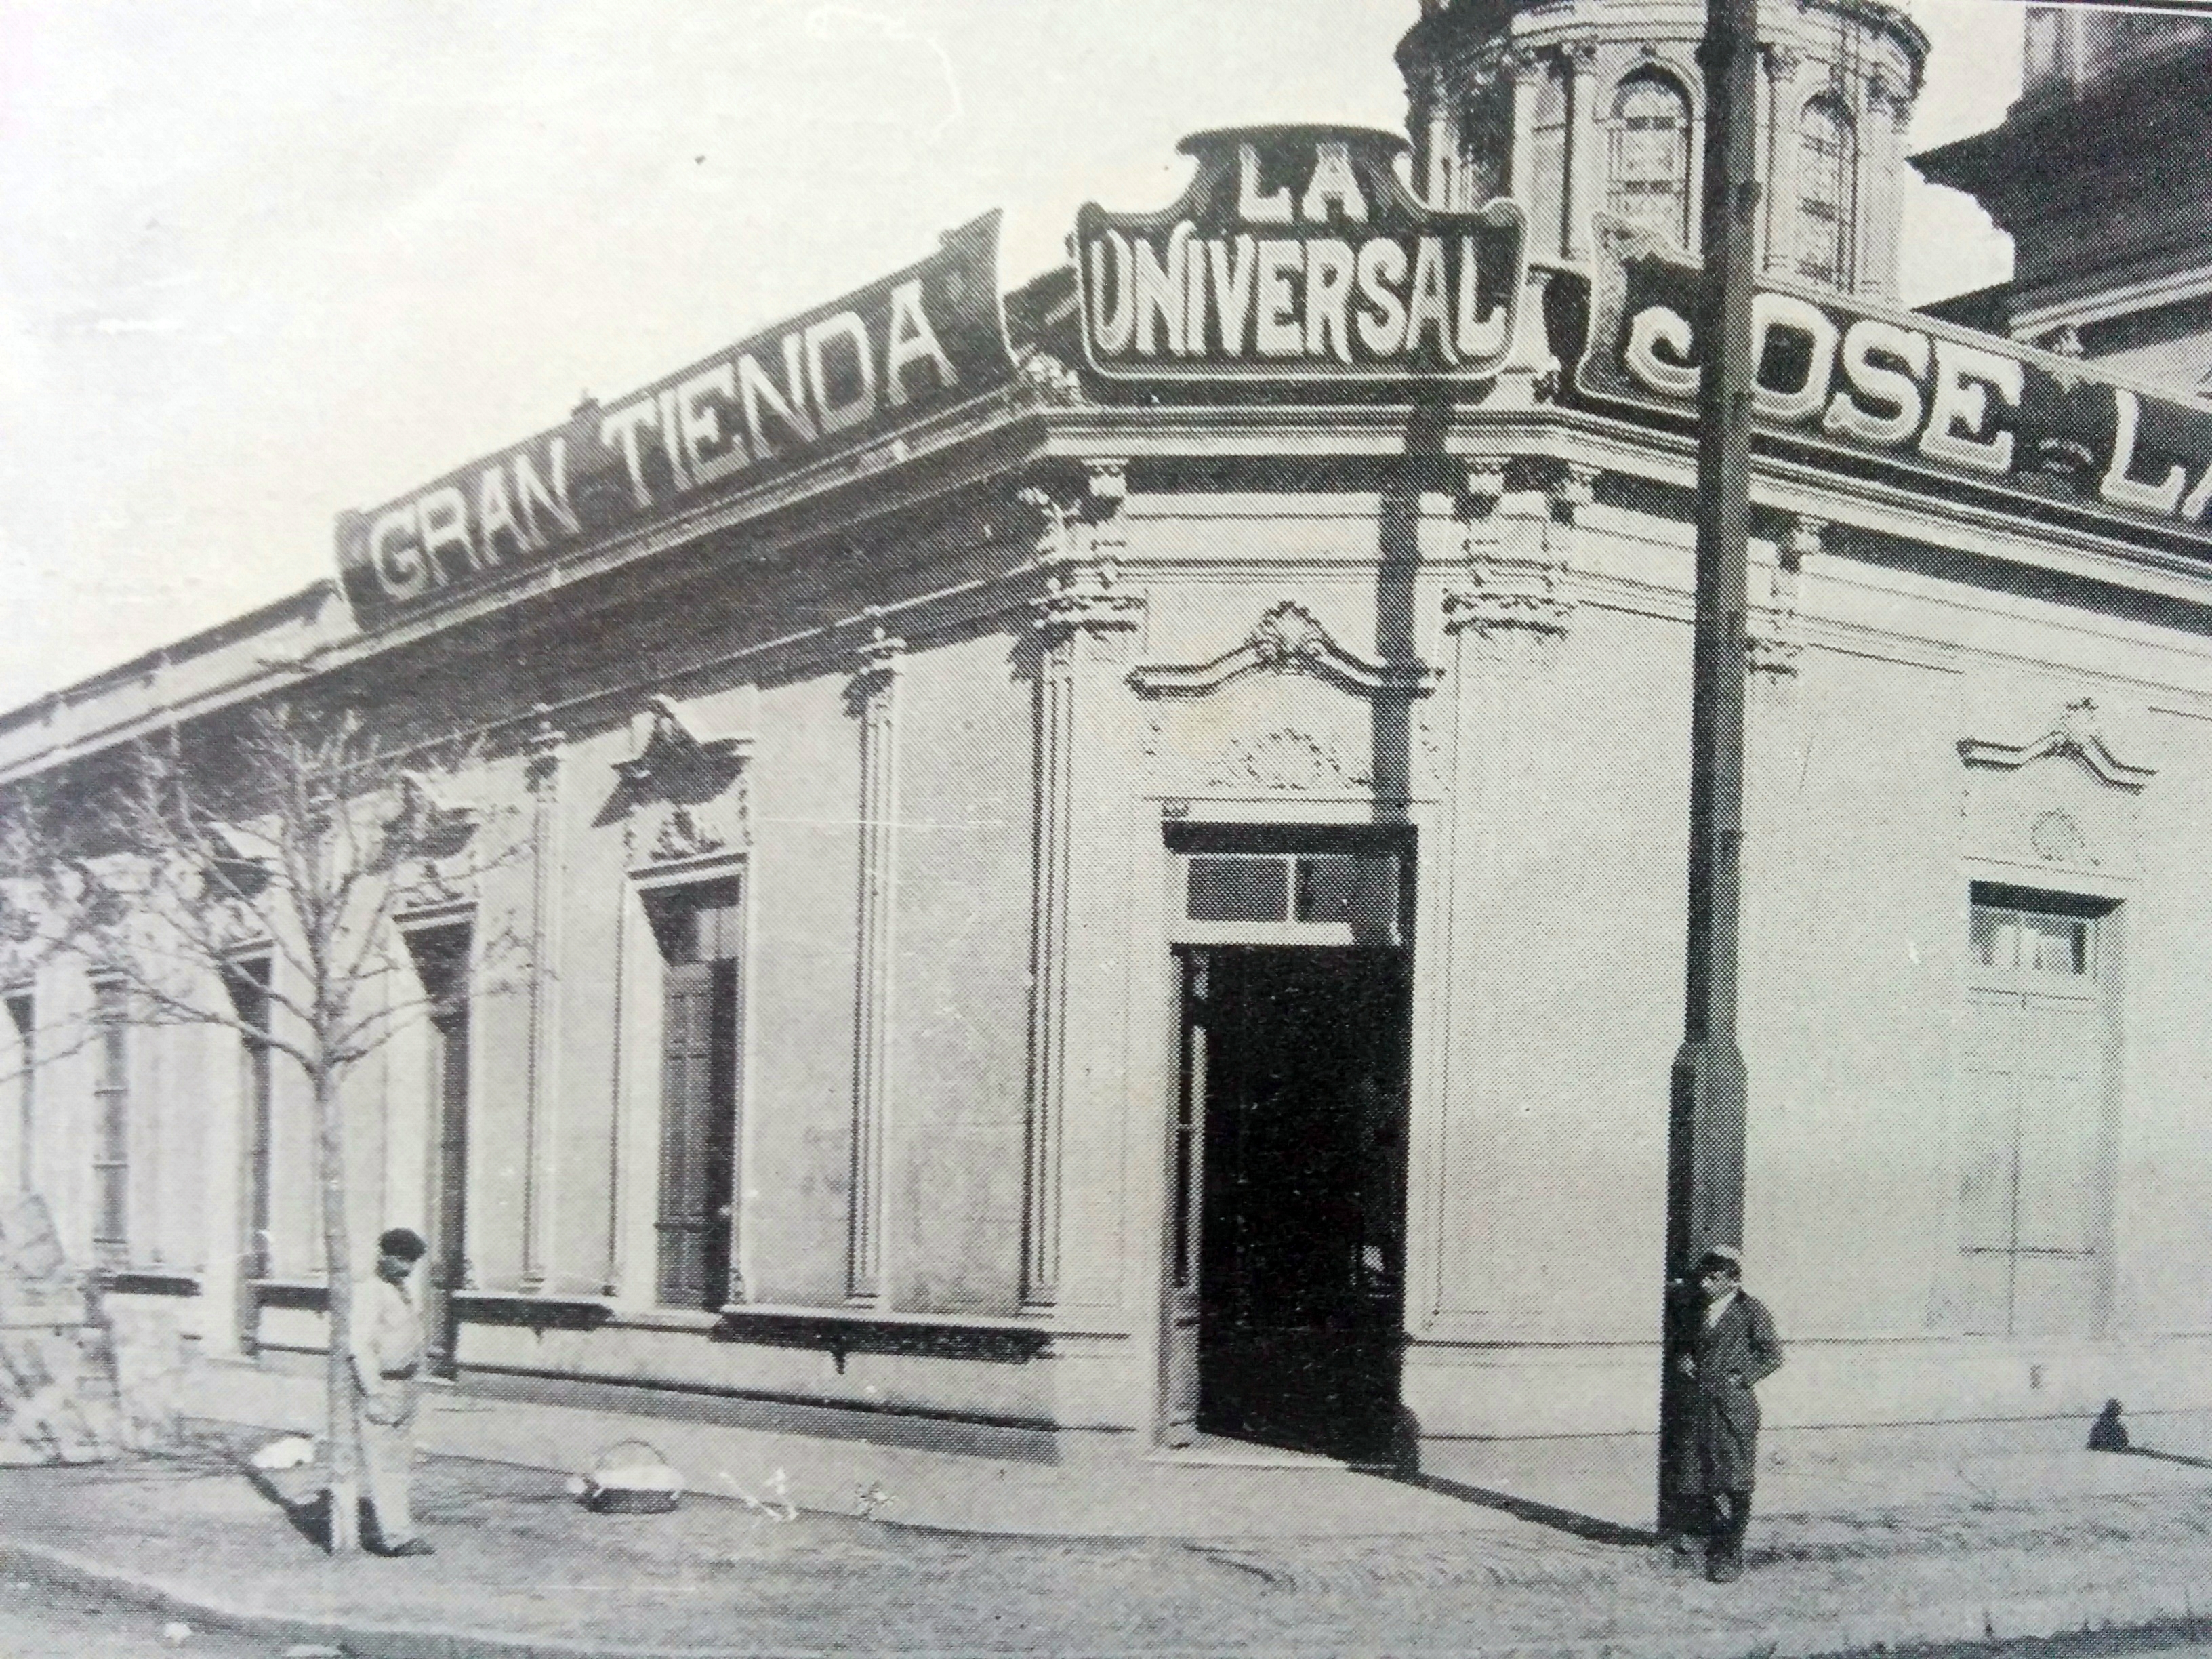 La tradicional esquina de la cafetería "La Perla", cuando allí funcionaba, en la década de 1910, la tienda "La Universal" de Don José Lago.